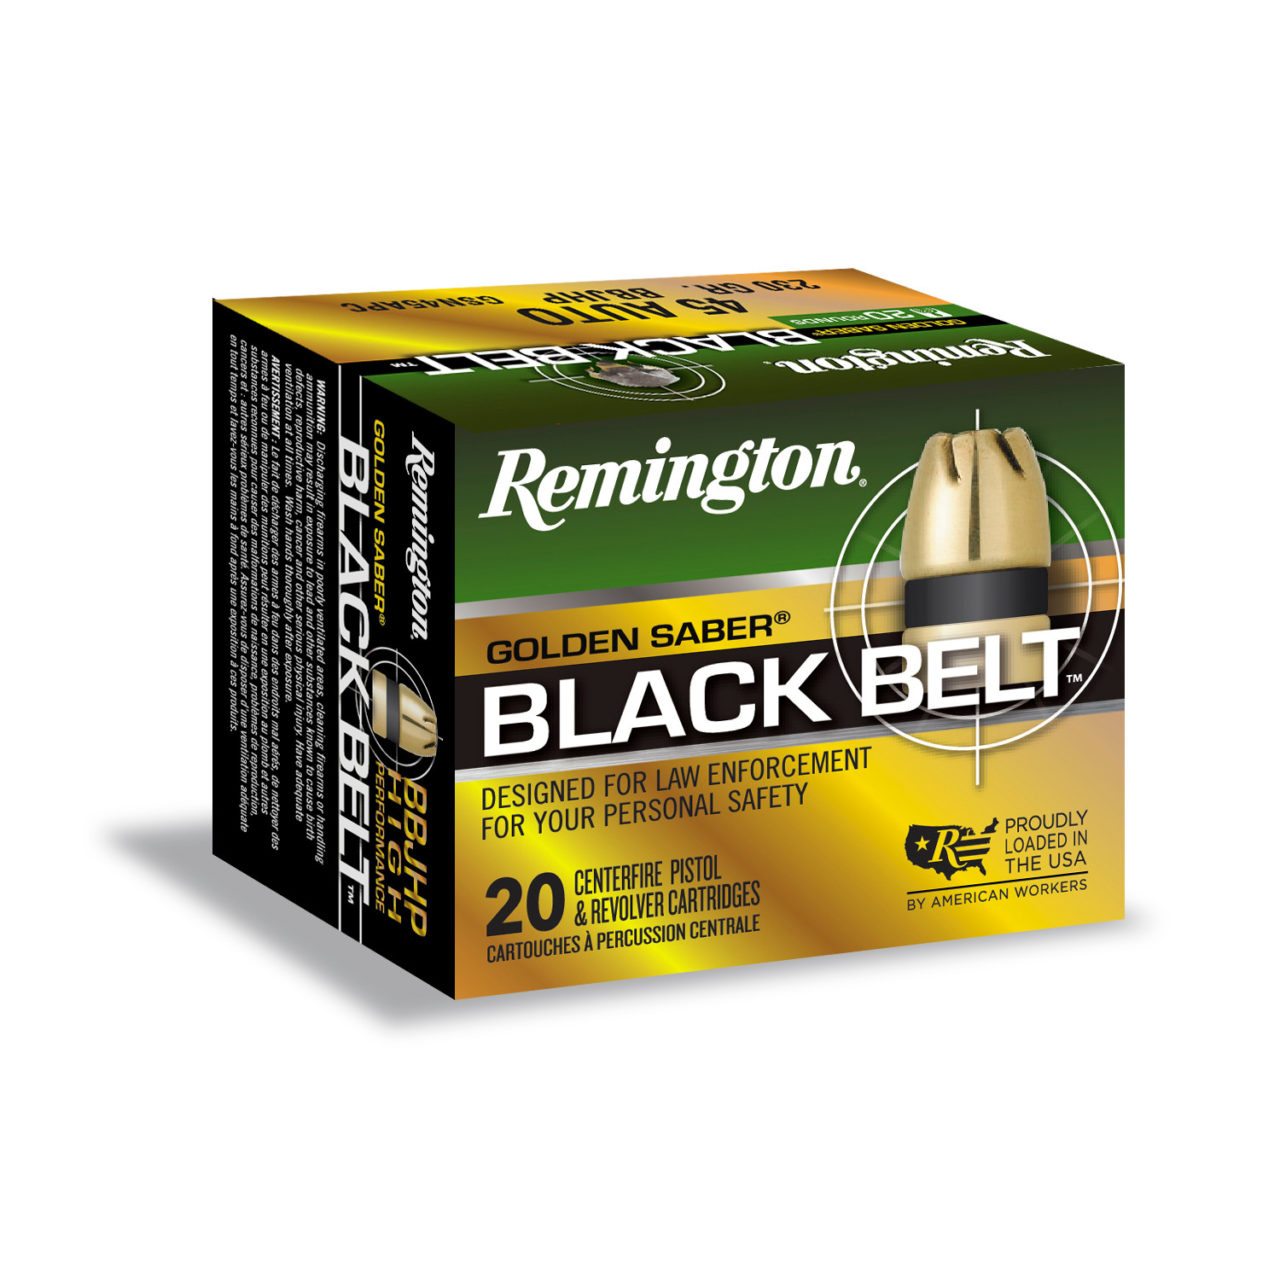 Now on Shelves, The Remington Golden Saber Black Belt 45 Auto